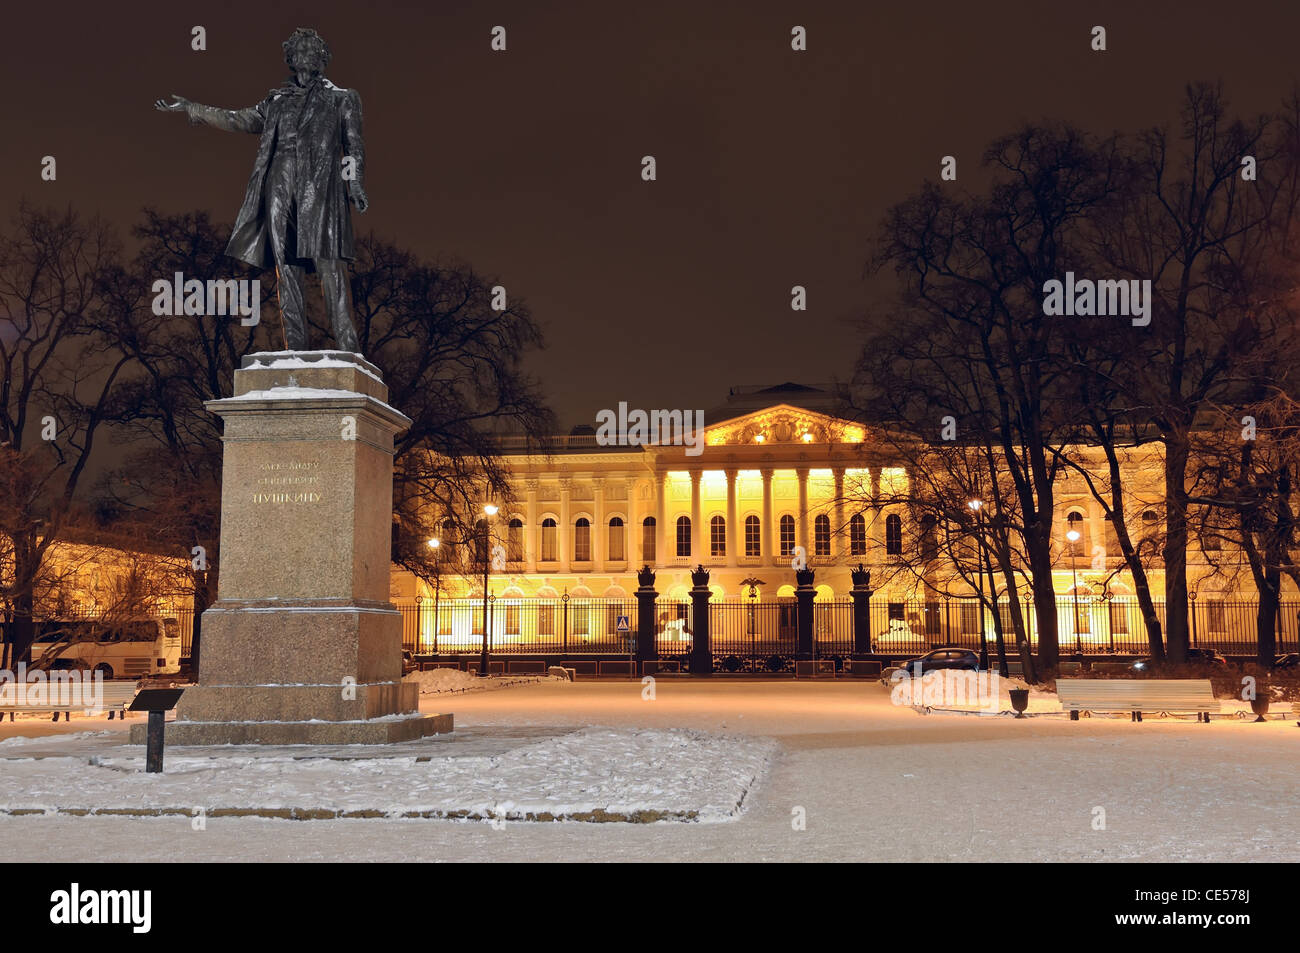 Sankt-Petersburg: Statue von Alexander Pushkin, berühmte russische Dichter. Nachtansicht Stockfoto